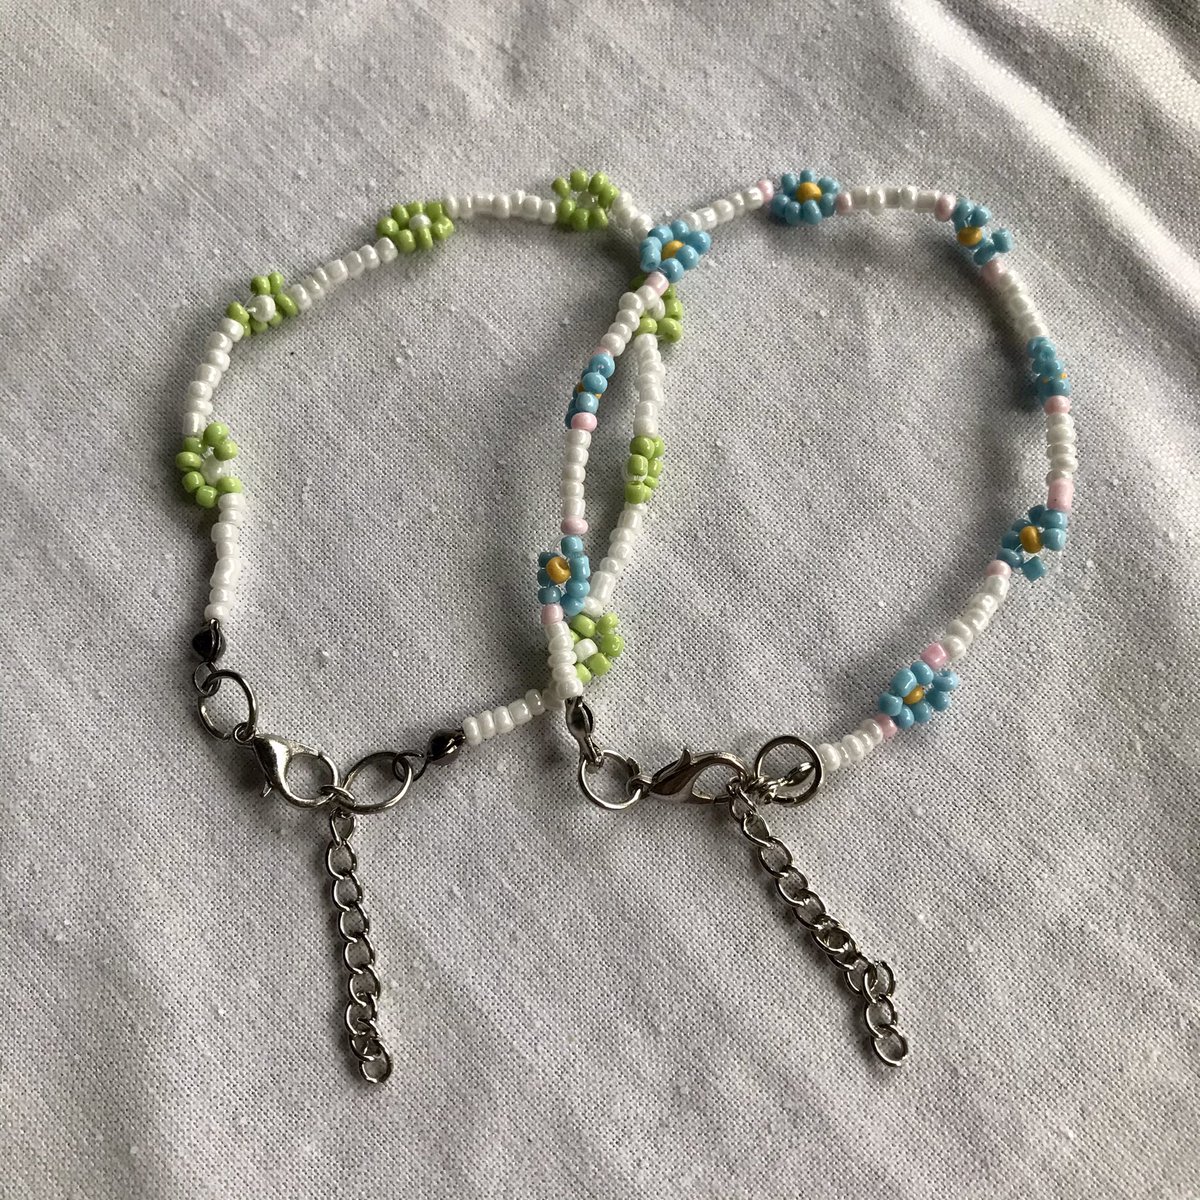 beads flower bracelet
Rp12.000

shopee.co.id/product/315715…

#gelangkpop #gelang #beadsbracelet #kpopbracelet #kpopbeads #koreanbracelet